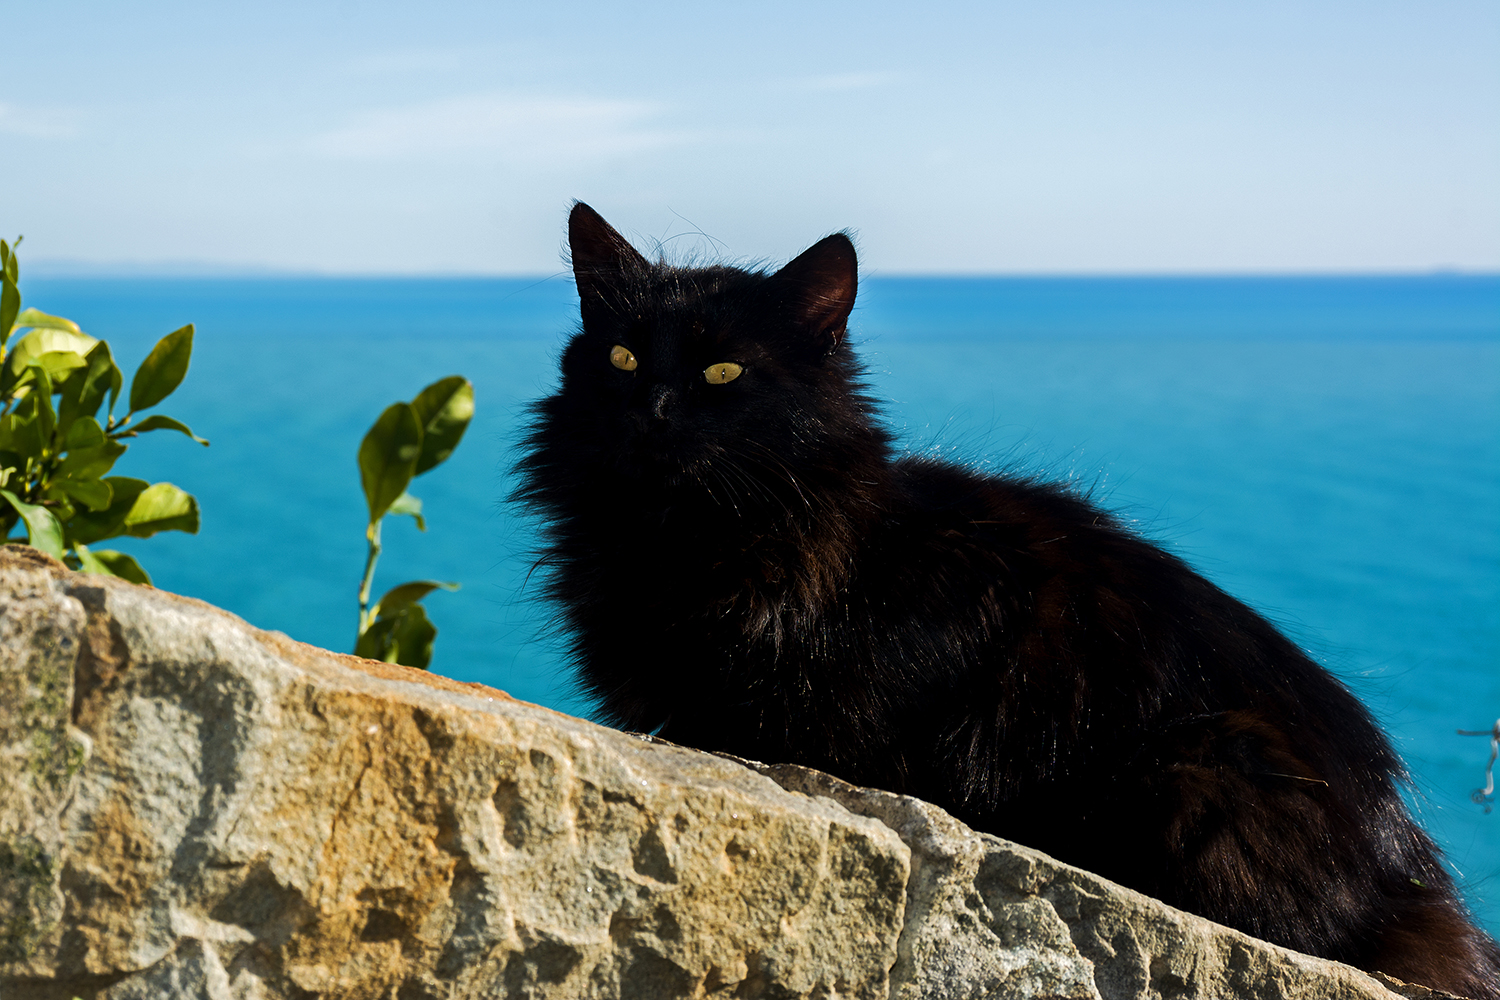 The black cat...